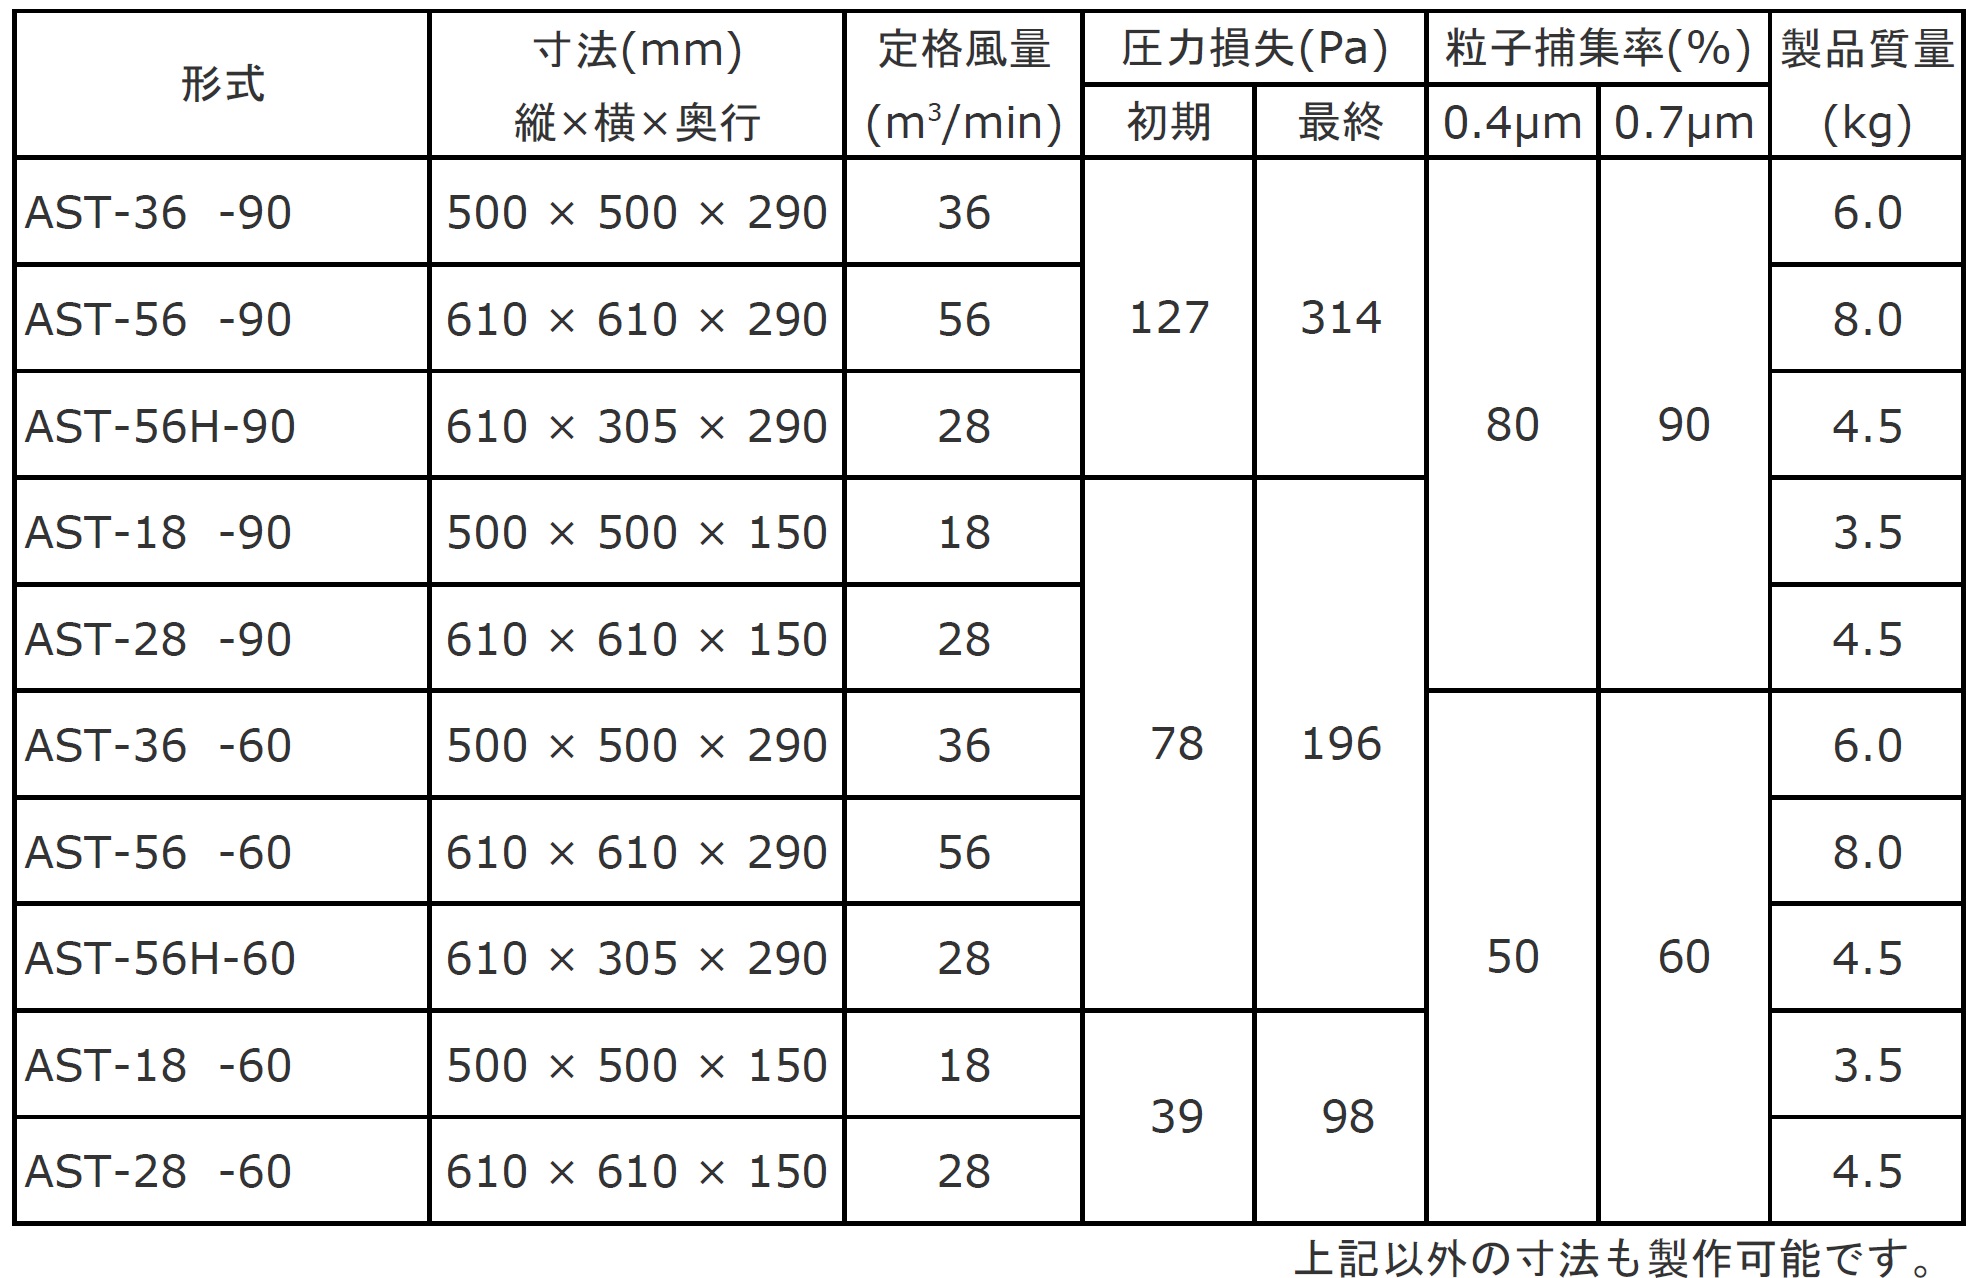 日本無機 耐熱180度中性能フィルタ 610×610×150 ASTCE-28-95ES4 - 3